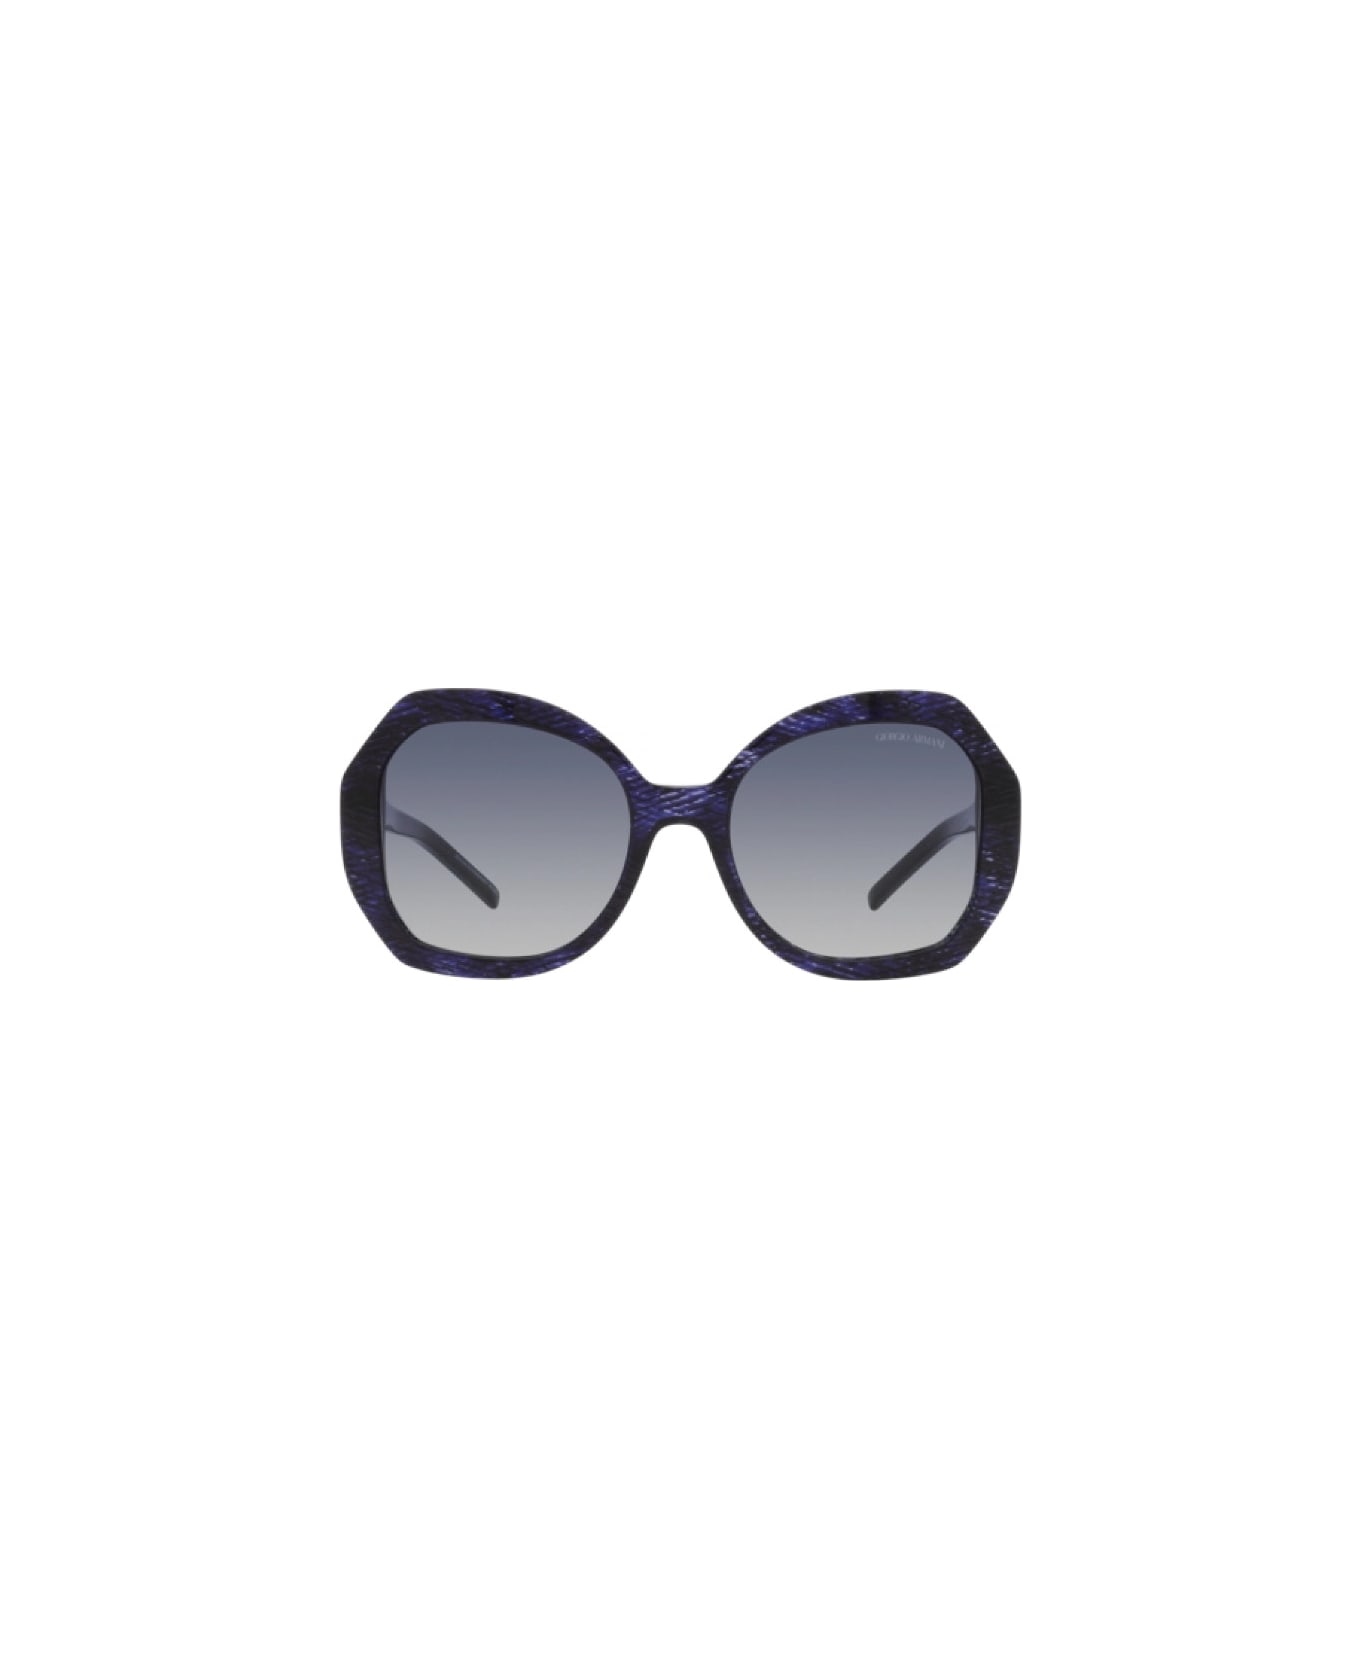 Giorgio Armani AR8180 6000/4L Sunglasses - Blu サングラス